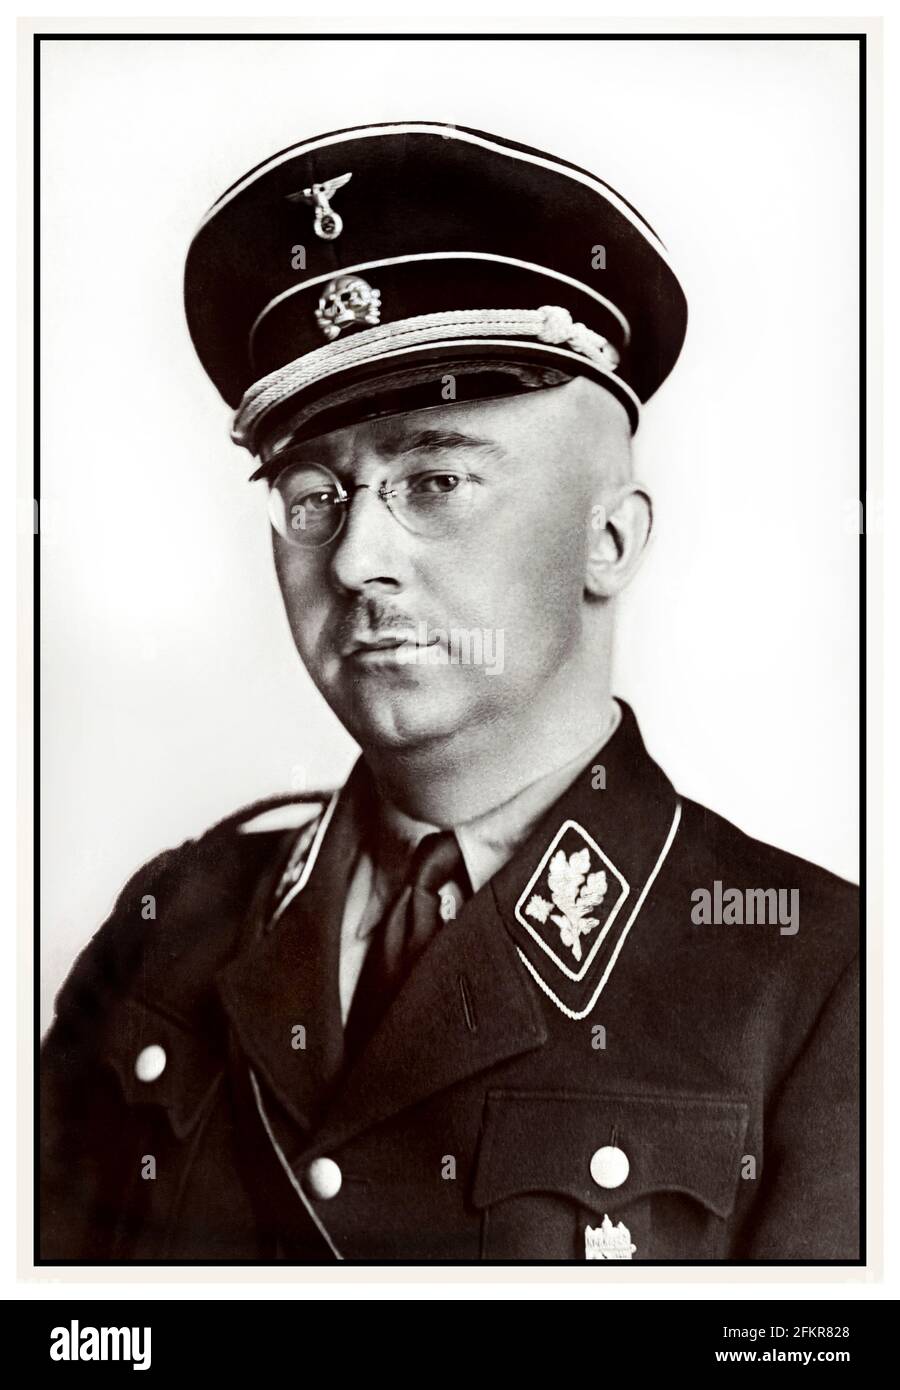 Ritratto di Heinrich Himmler in uniforme nazista Waffen SS 1940's seconda guerra mondiale tedesco nazionalsocialista politico nazista comandante militare polizia segreta. Himmler era uno degli uomini più potenti della Germania nazista e uno dei più direttamente responsabili dell'Olocausto. Ha facilitato il genocidio in tutta Europa e in tutta l'est. Si suicidò nel 1945 dopo essere stato catturato in fuga sotto un'altra identità. Seconda guerra mondiale Foto Stock